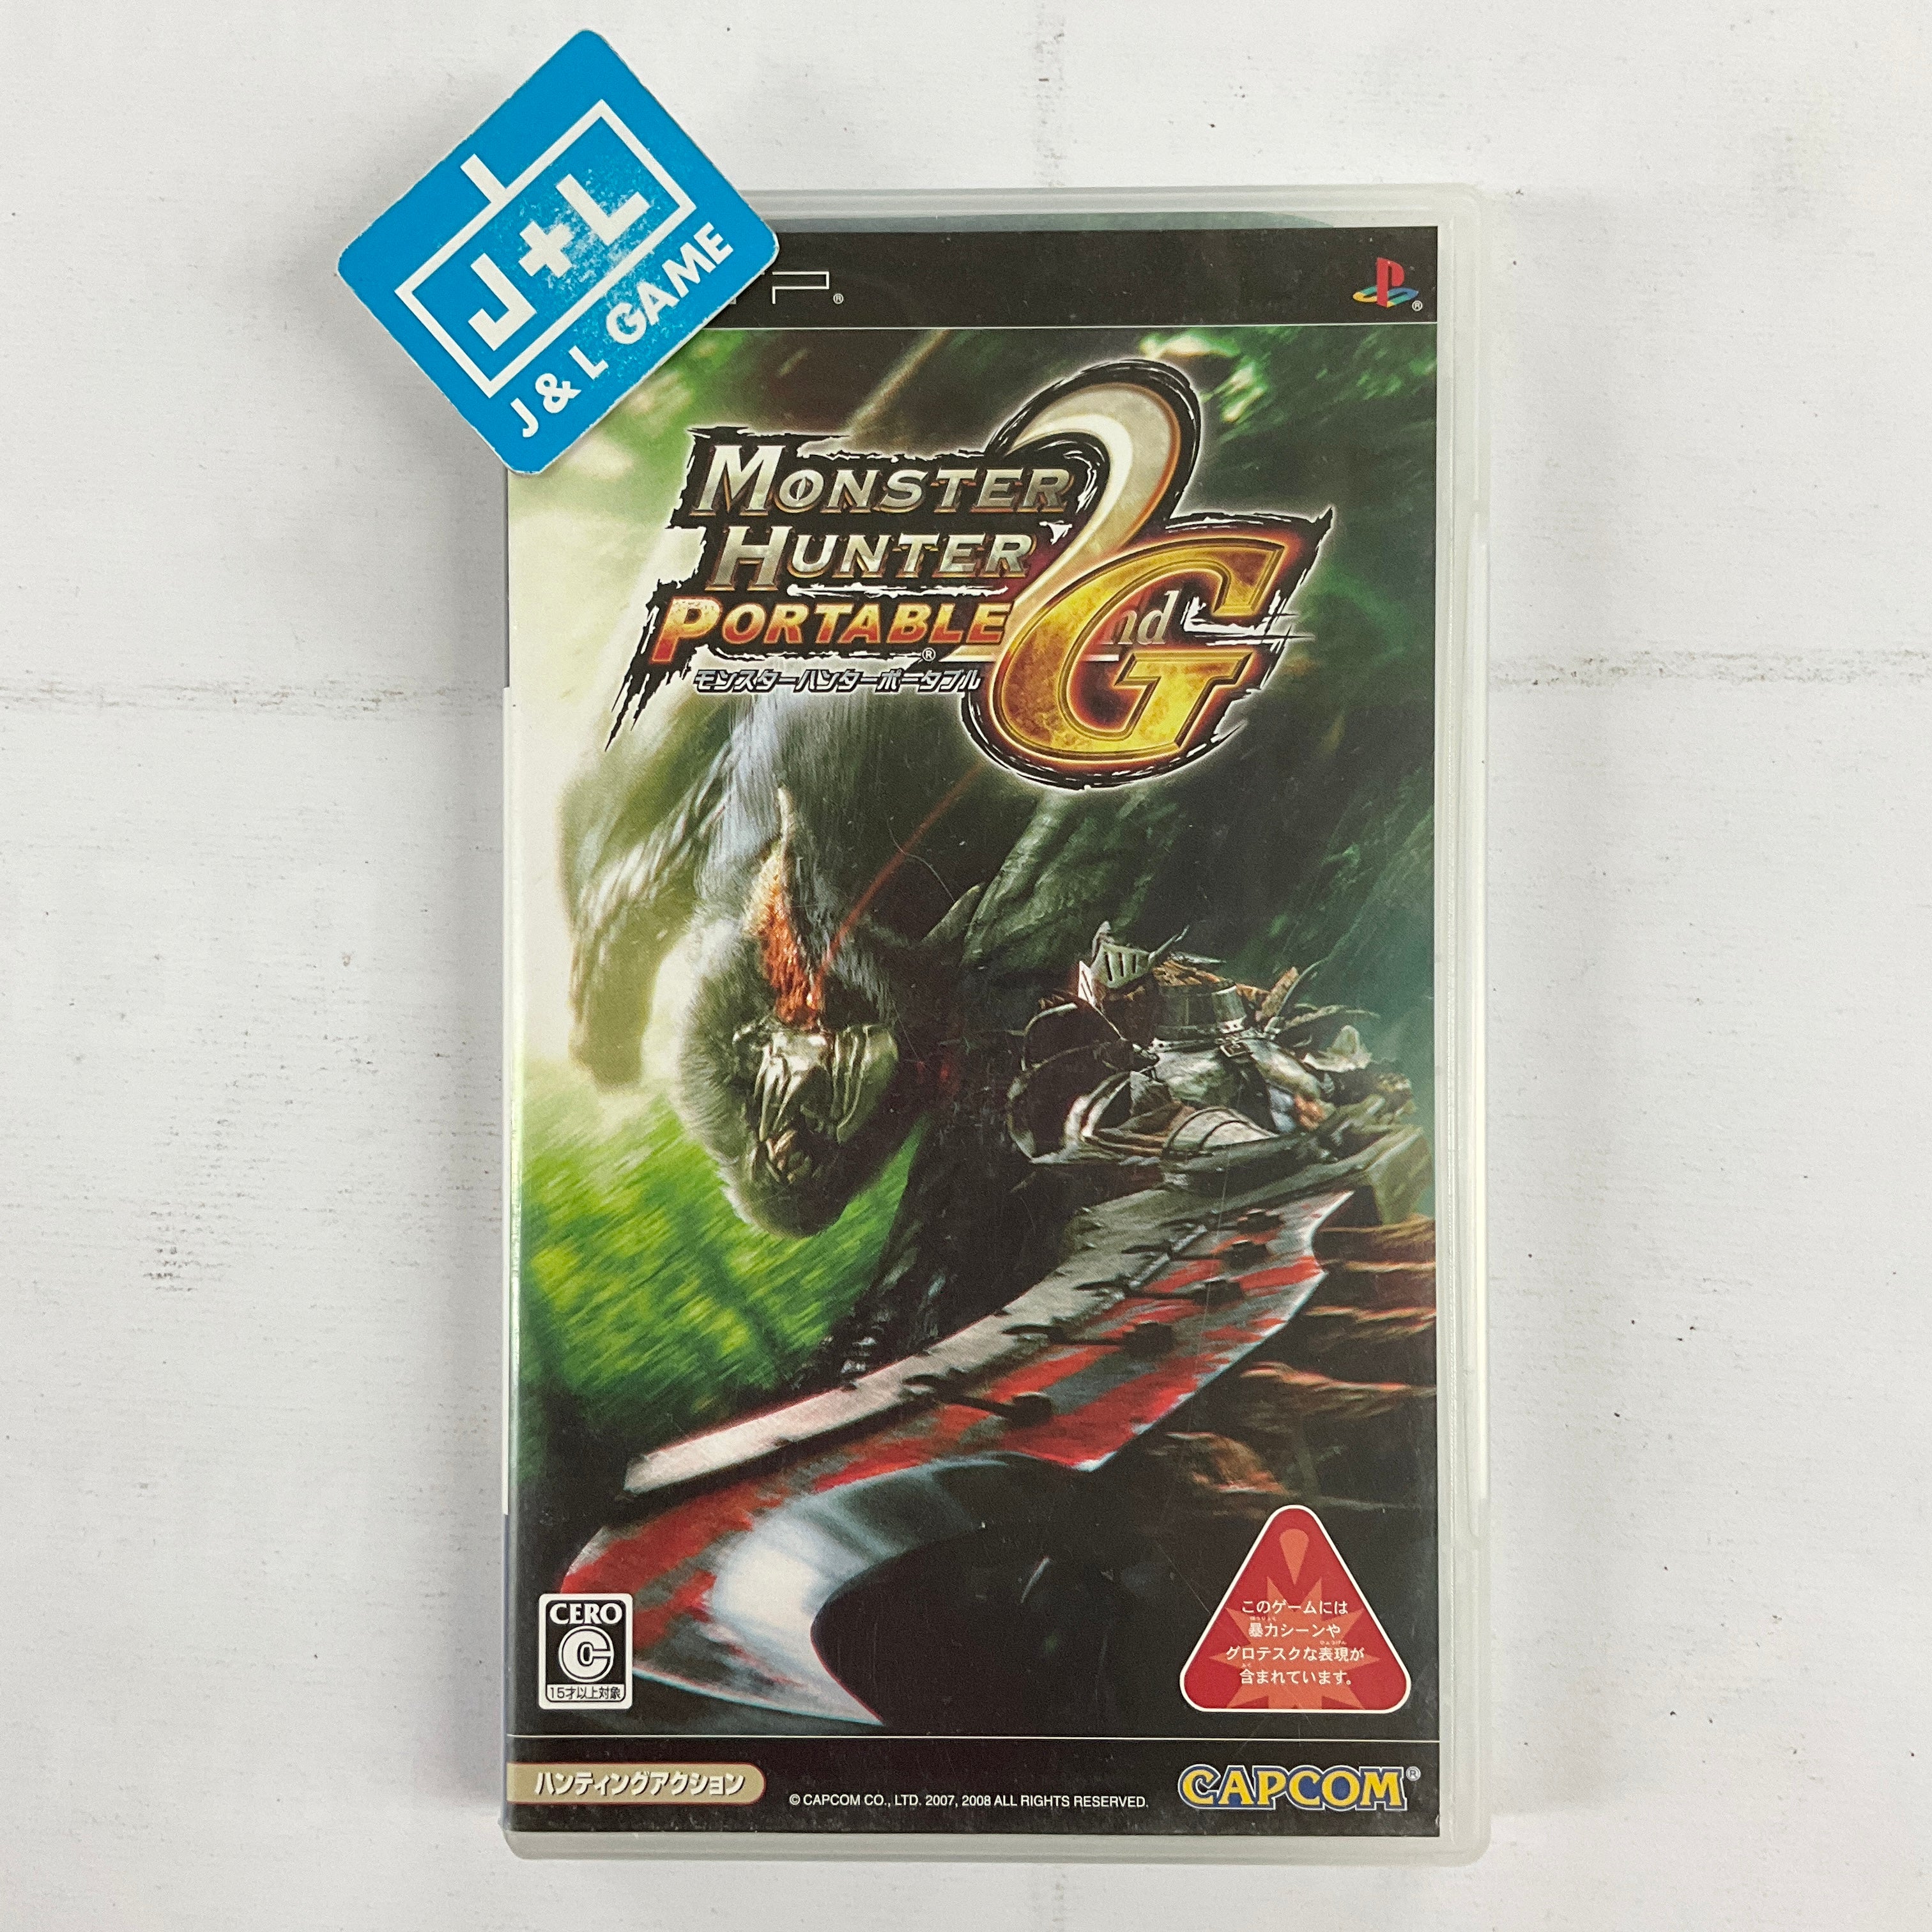 Monster Hunter Portable 2nd G - Sony PSP [Pre-Owned] (Japanese